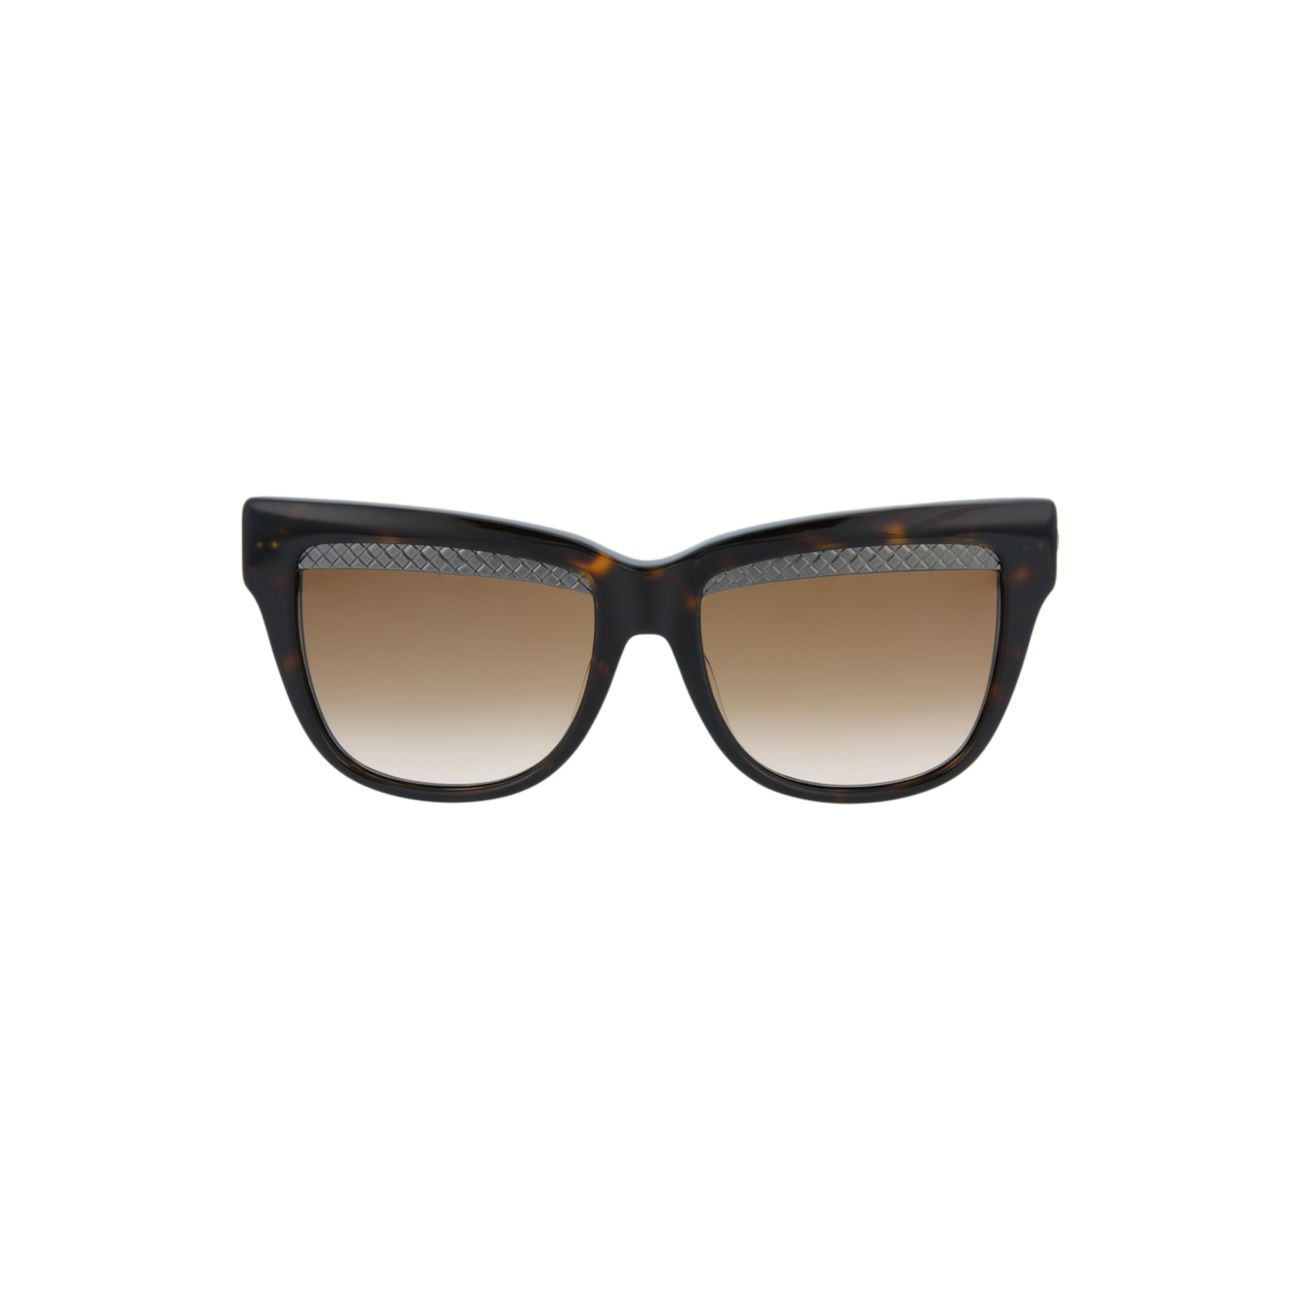 Квадратные солнцезащитные очки Novelty 53 мм Bottega Veneta